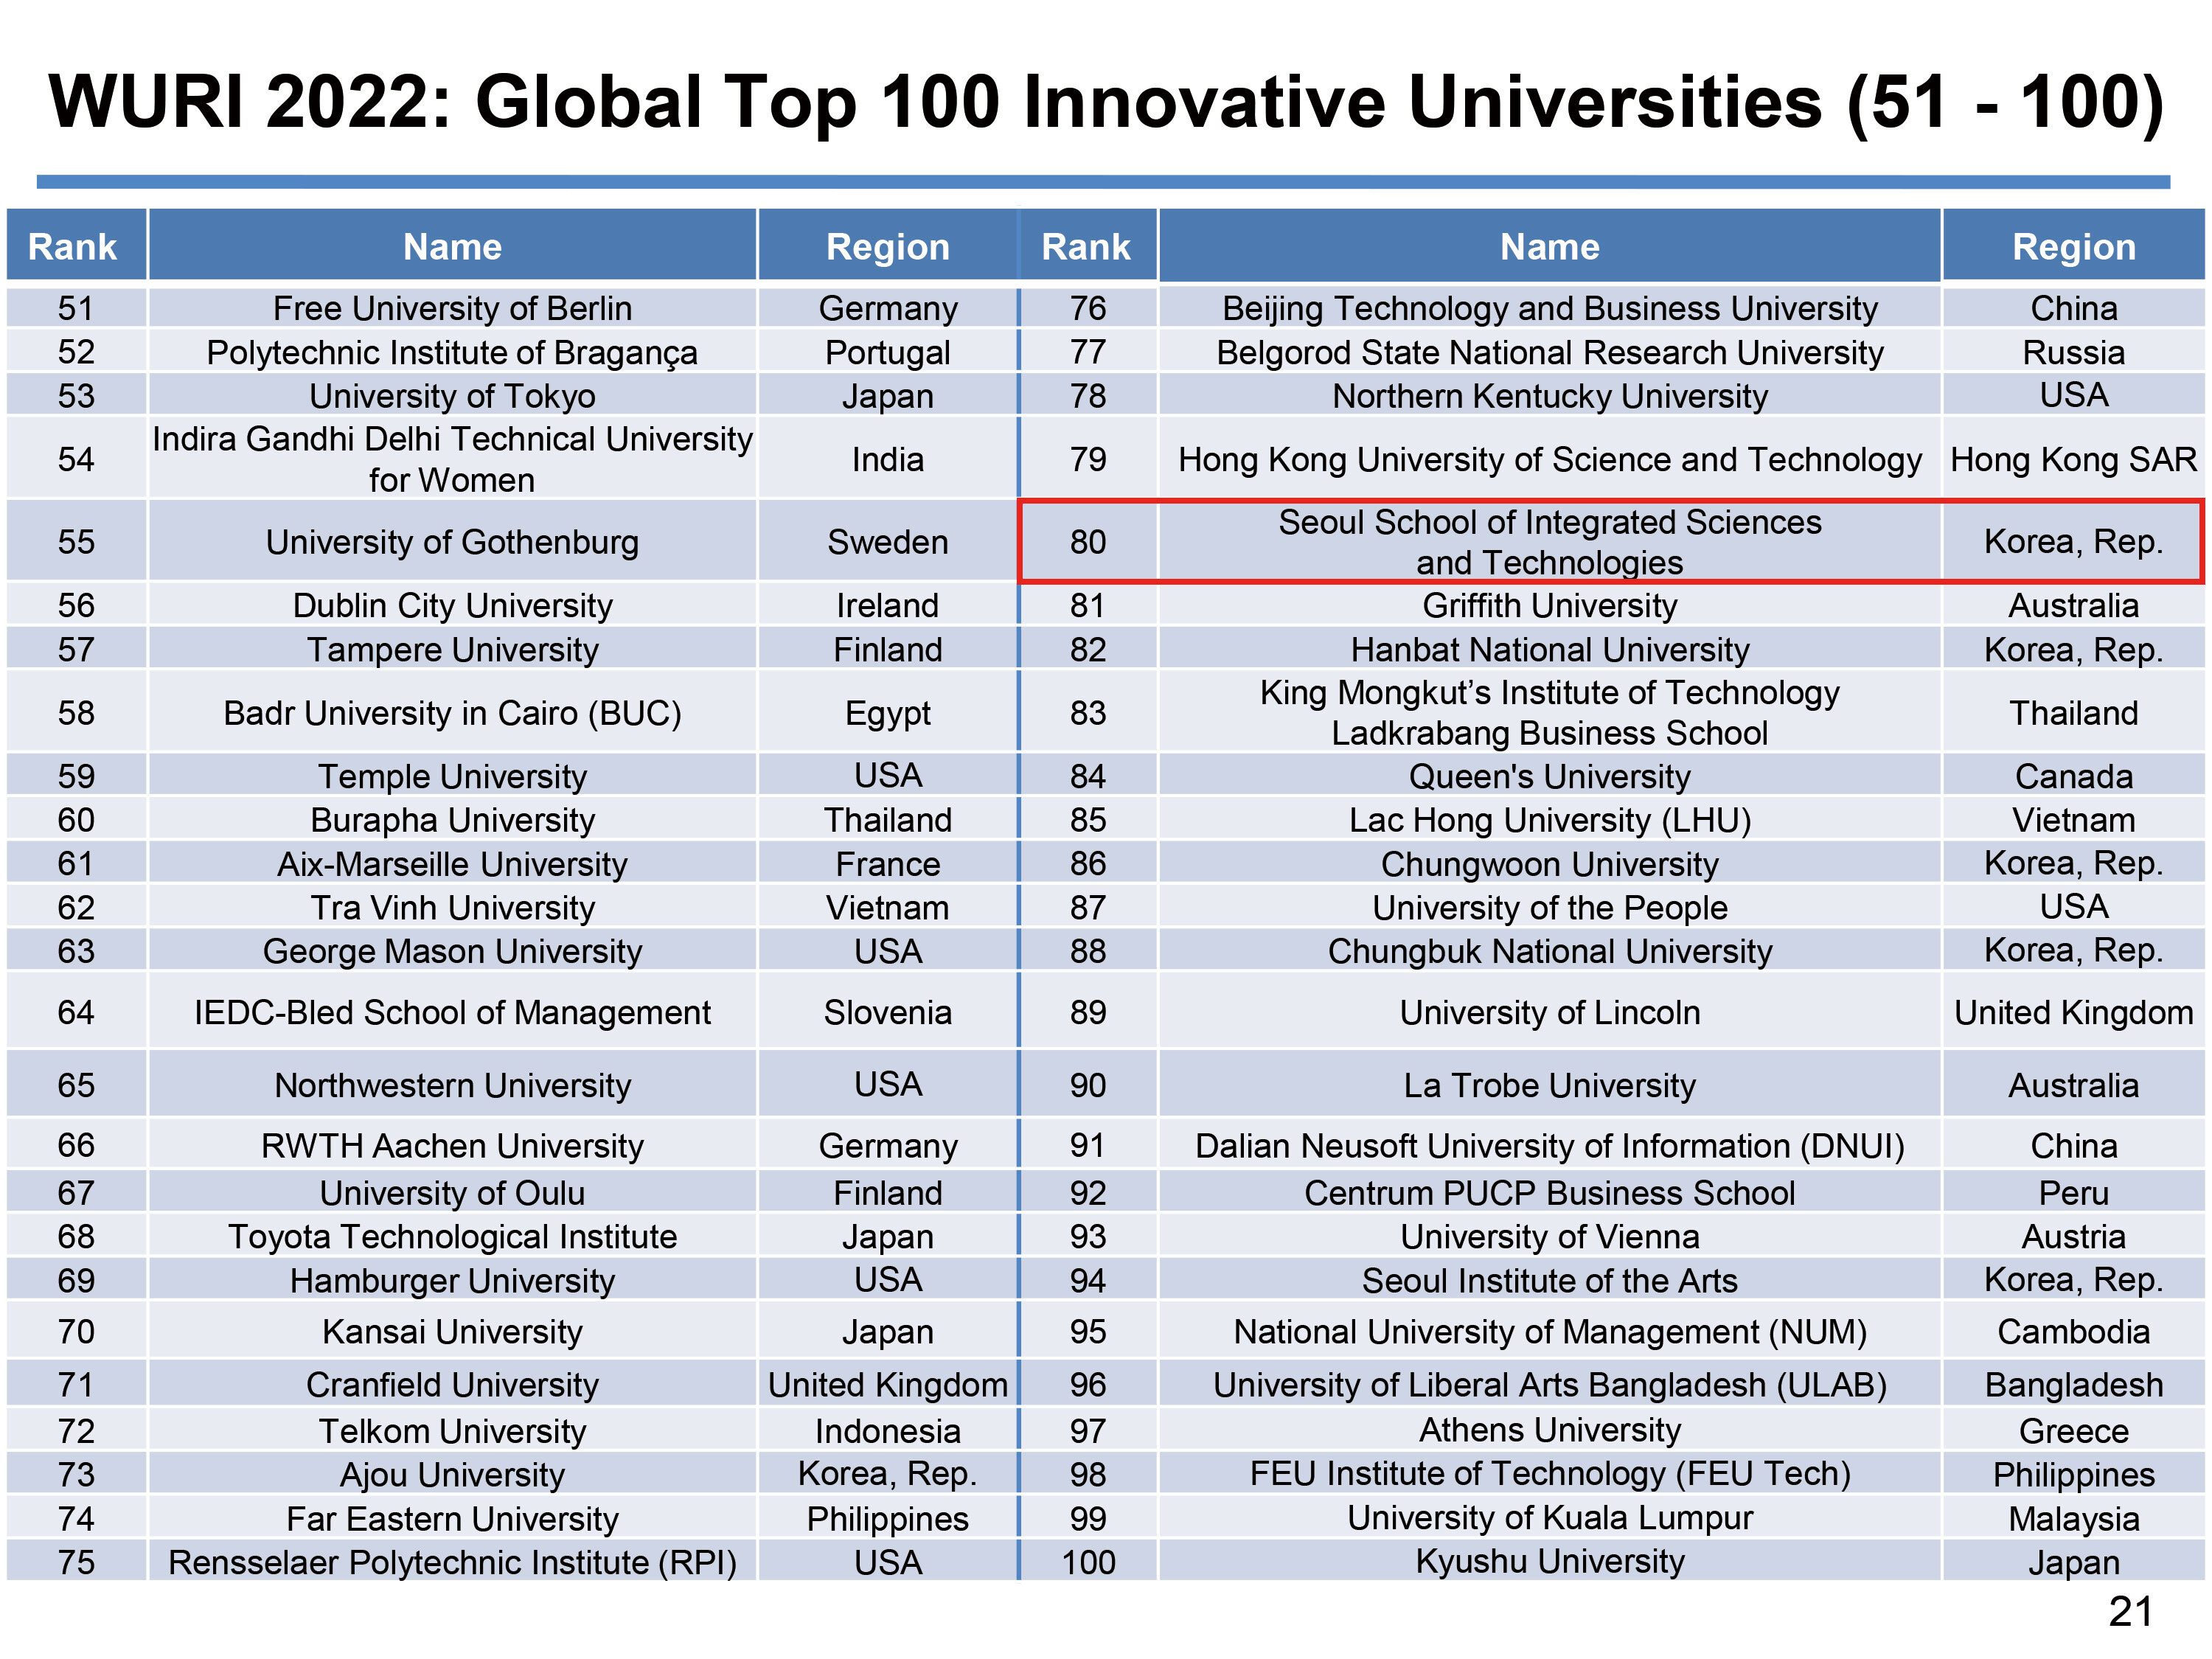 韩国首尔科大在《2022年世界真正有影响力的大学》中荣获“Global Top 100”排名第80位